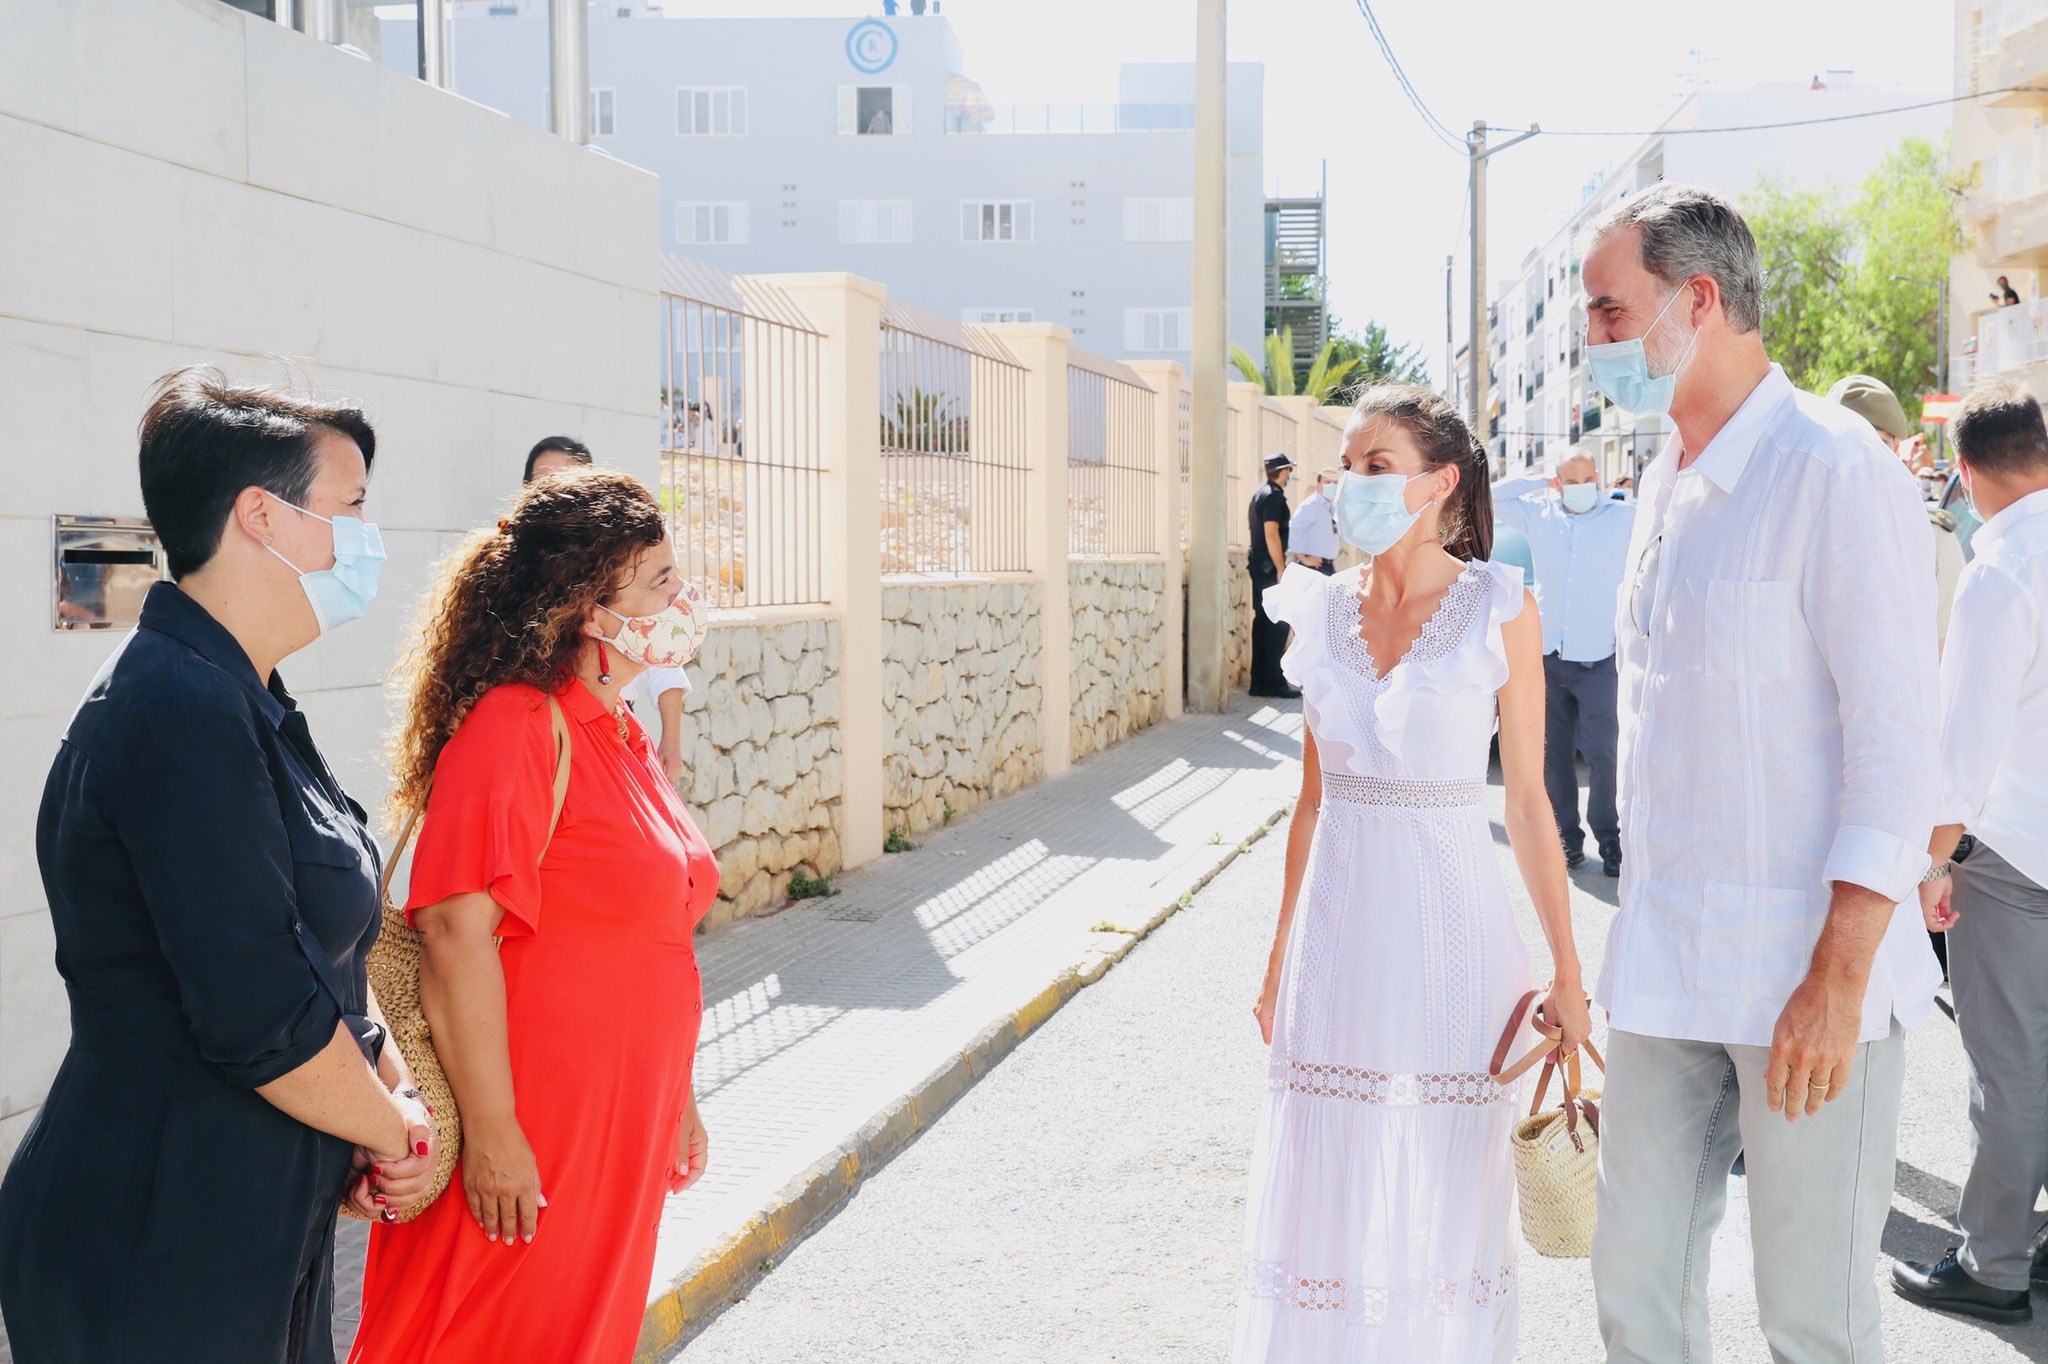 La reina Letizia estrena estilo (adlib) y marca (española) en su visita a Ibiza